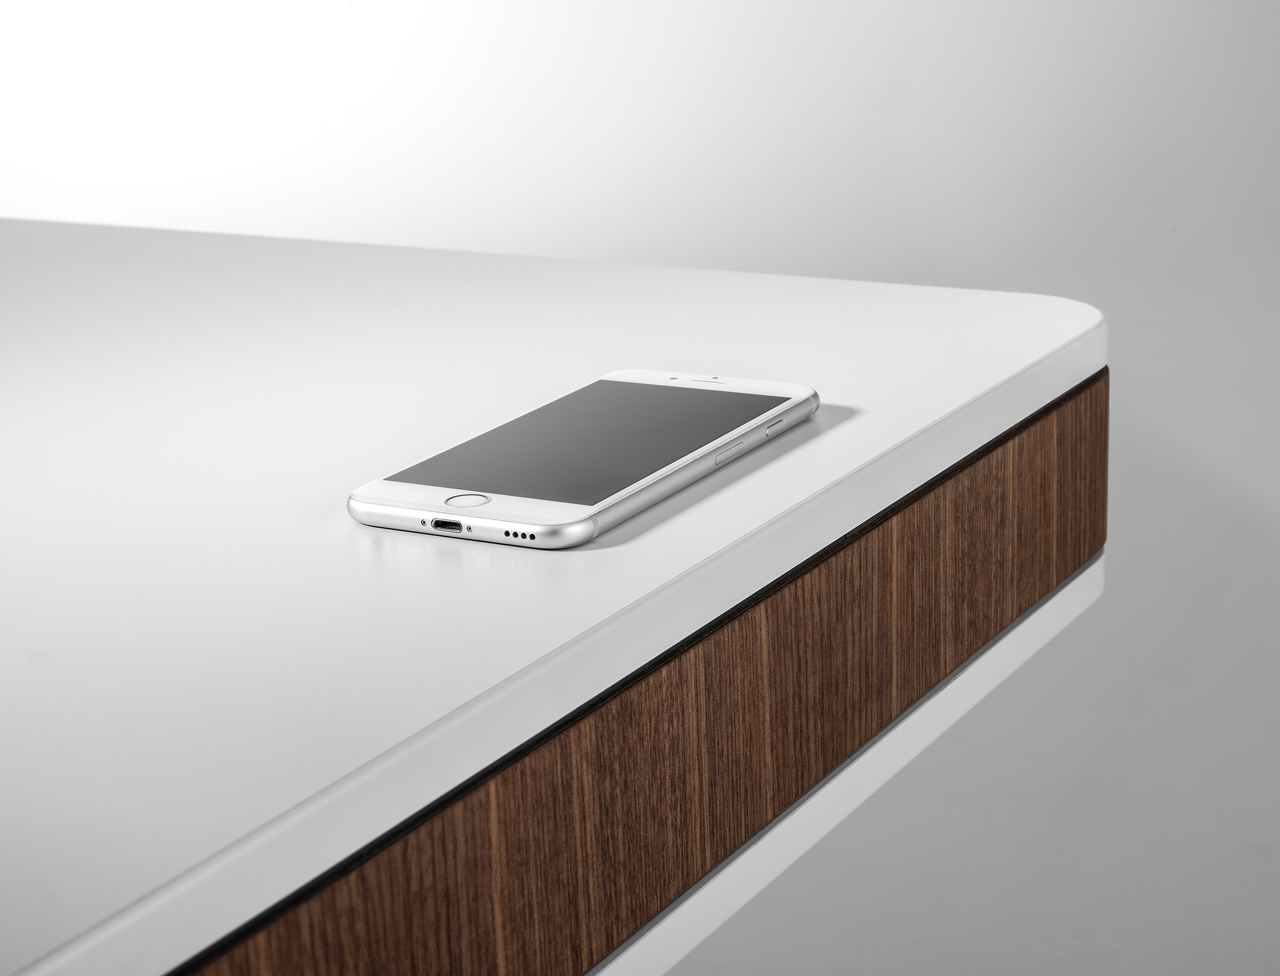 Kabelloses Tisch-Schnellladegerät ideal für Smartphones und Geräte mit  Qi-Standard, 10 W, induktives Laden, eleganter Tischständer, ideal für  Büro, Home-Office, Freizeit